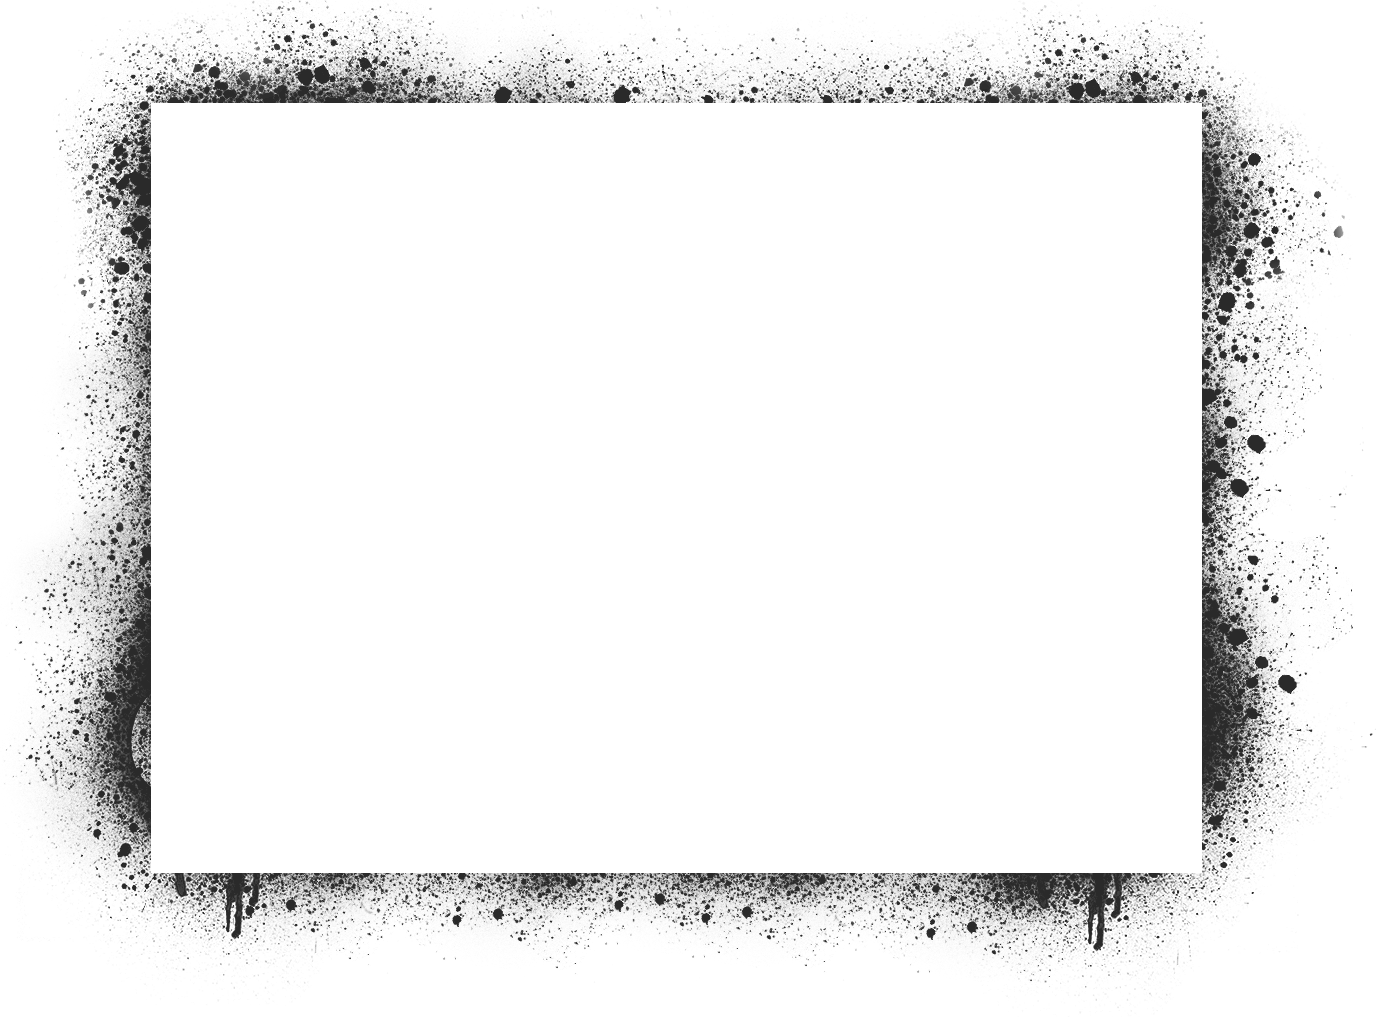 A Black Rectangular Frame With White Specks